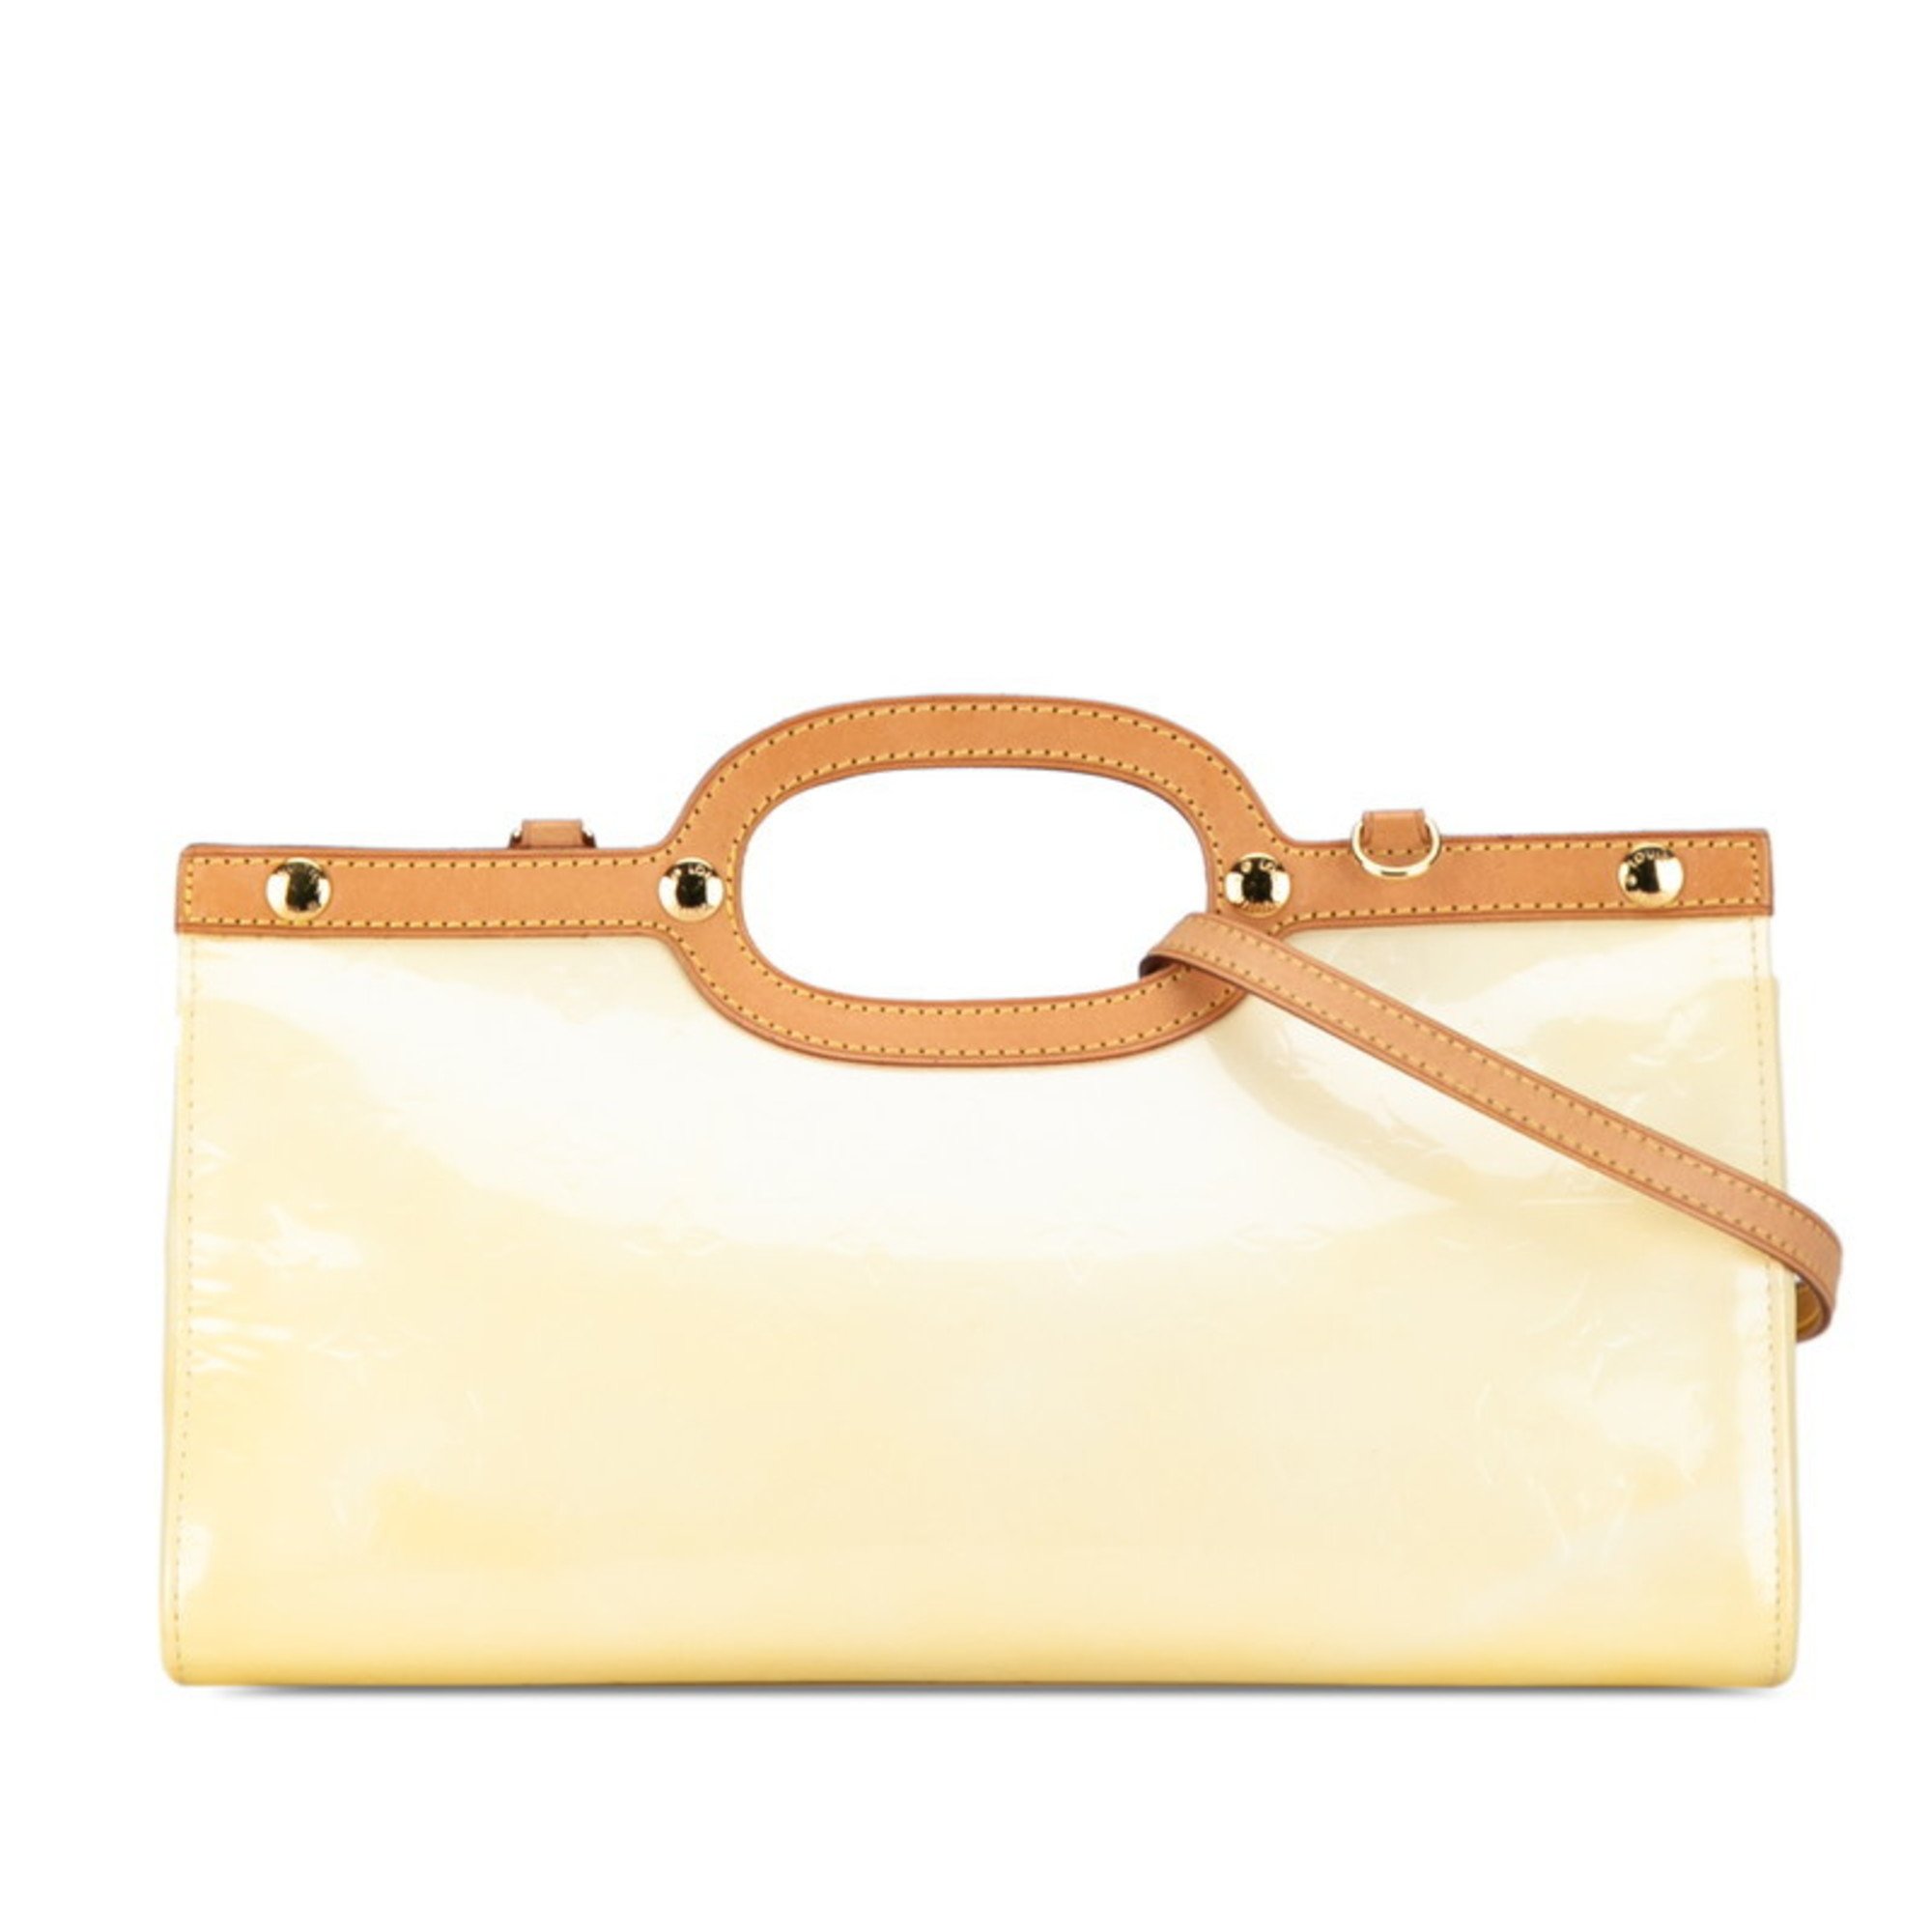 Louis Vuitton Monogram Vernis Roxbury Drive Handbag Shoulder Bag M91372 Noisette Beige Patent Leather Women's LOUIS VUITTON